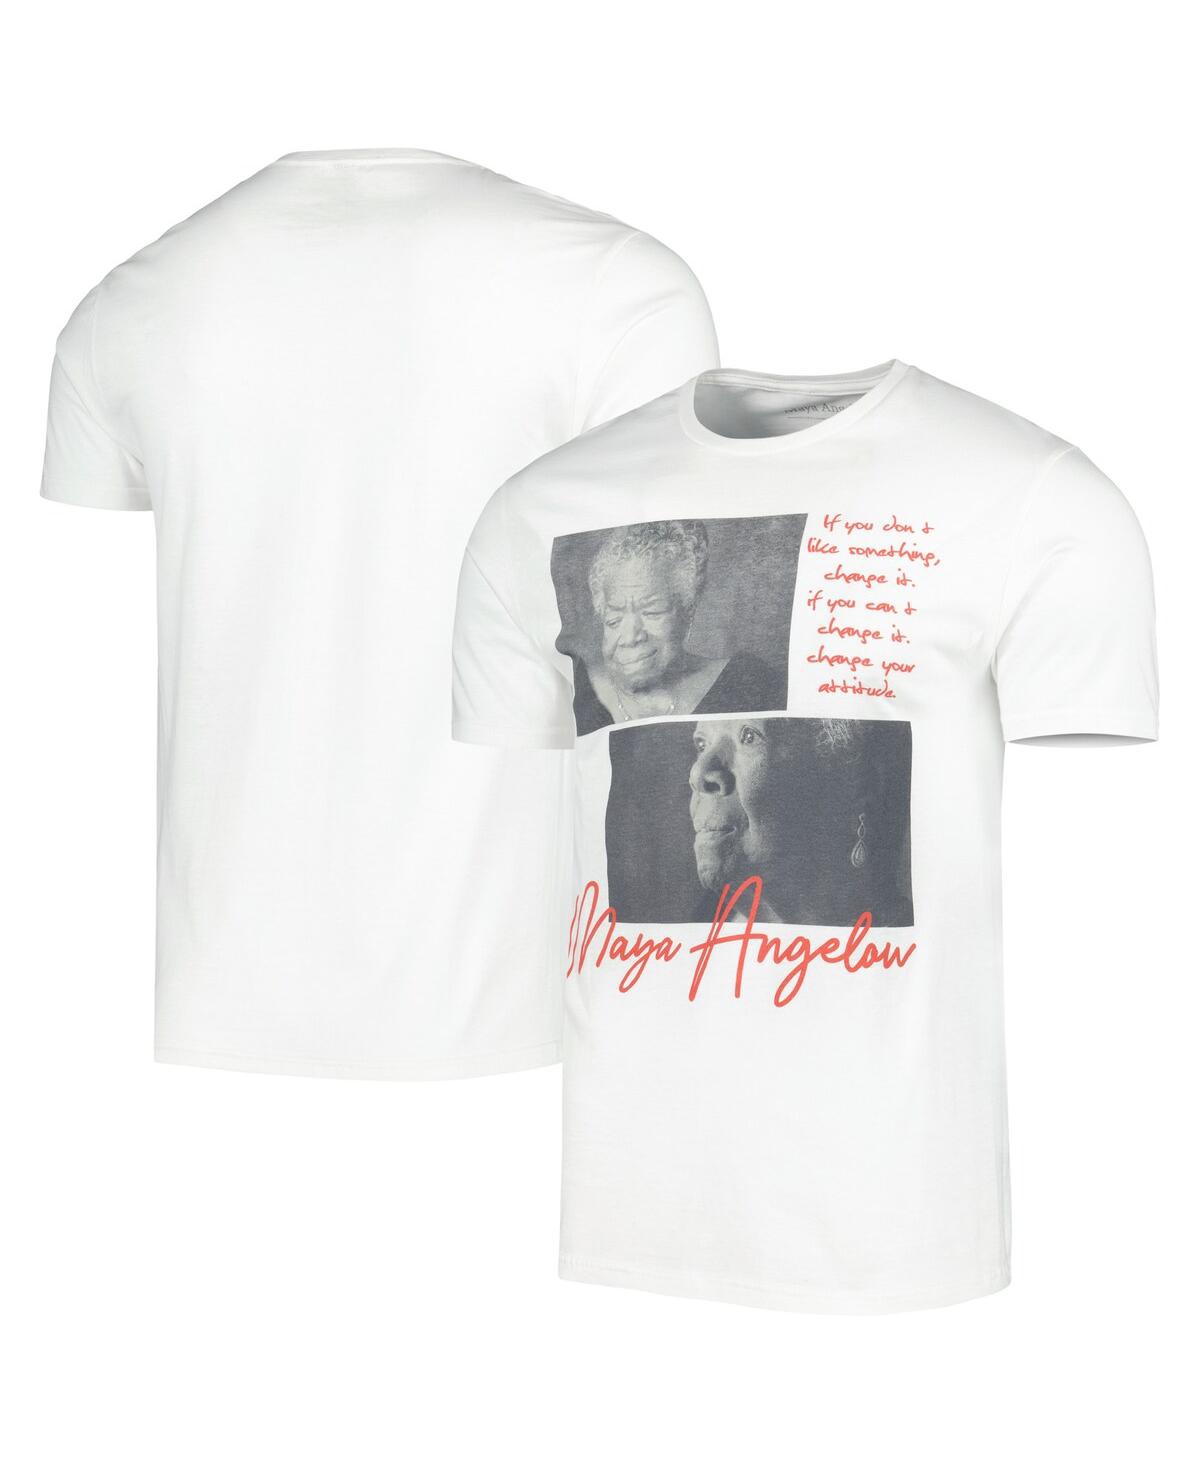 Men's and Women's White Maya Angelou Graphic T-shirt - White